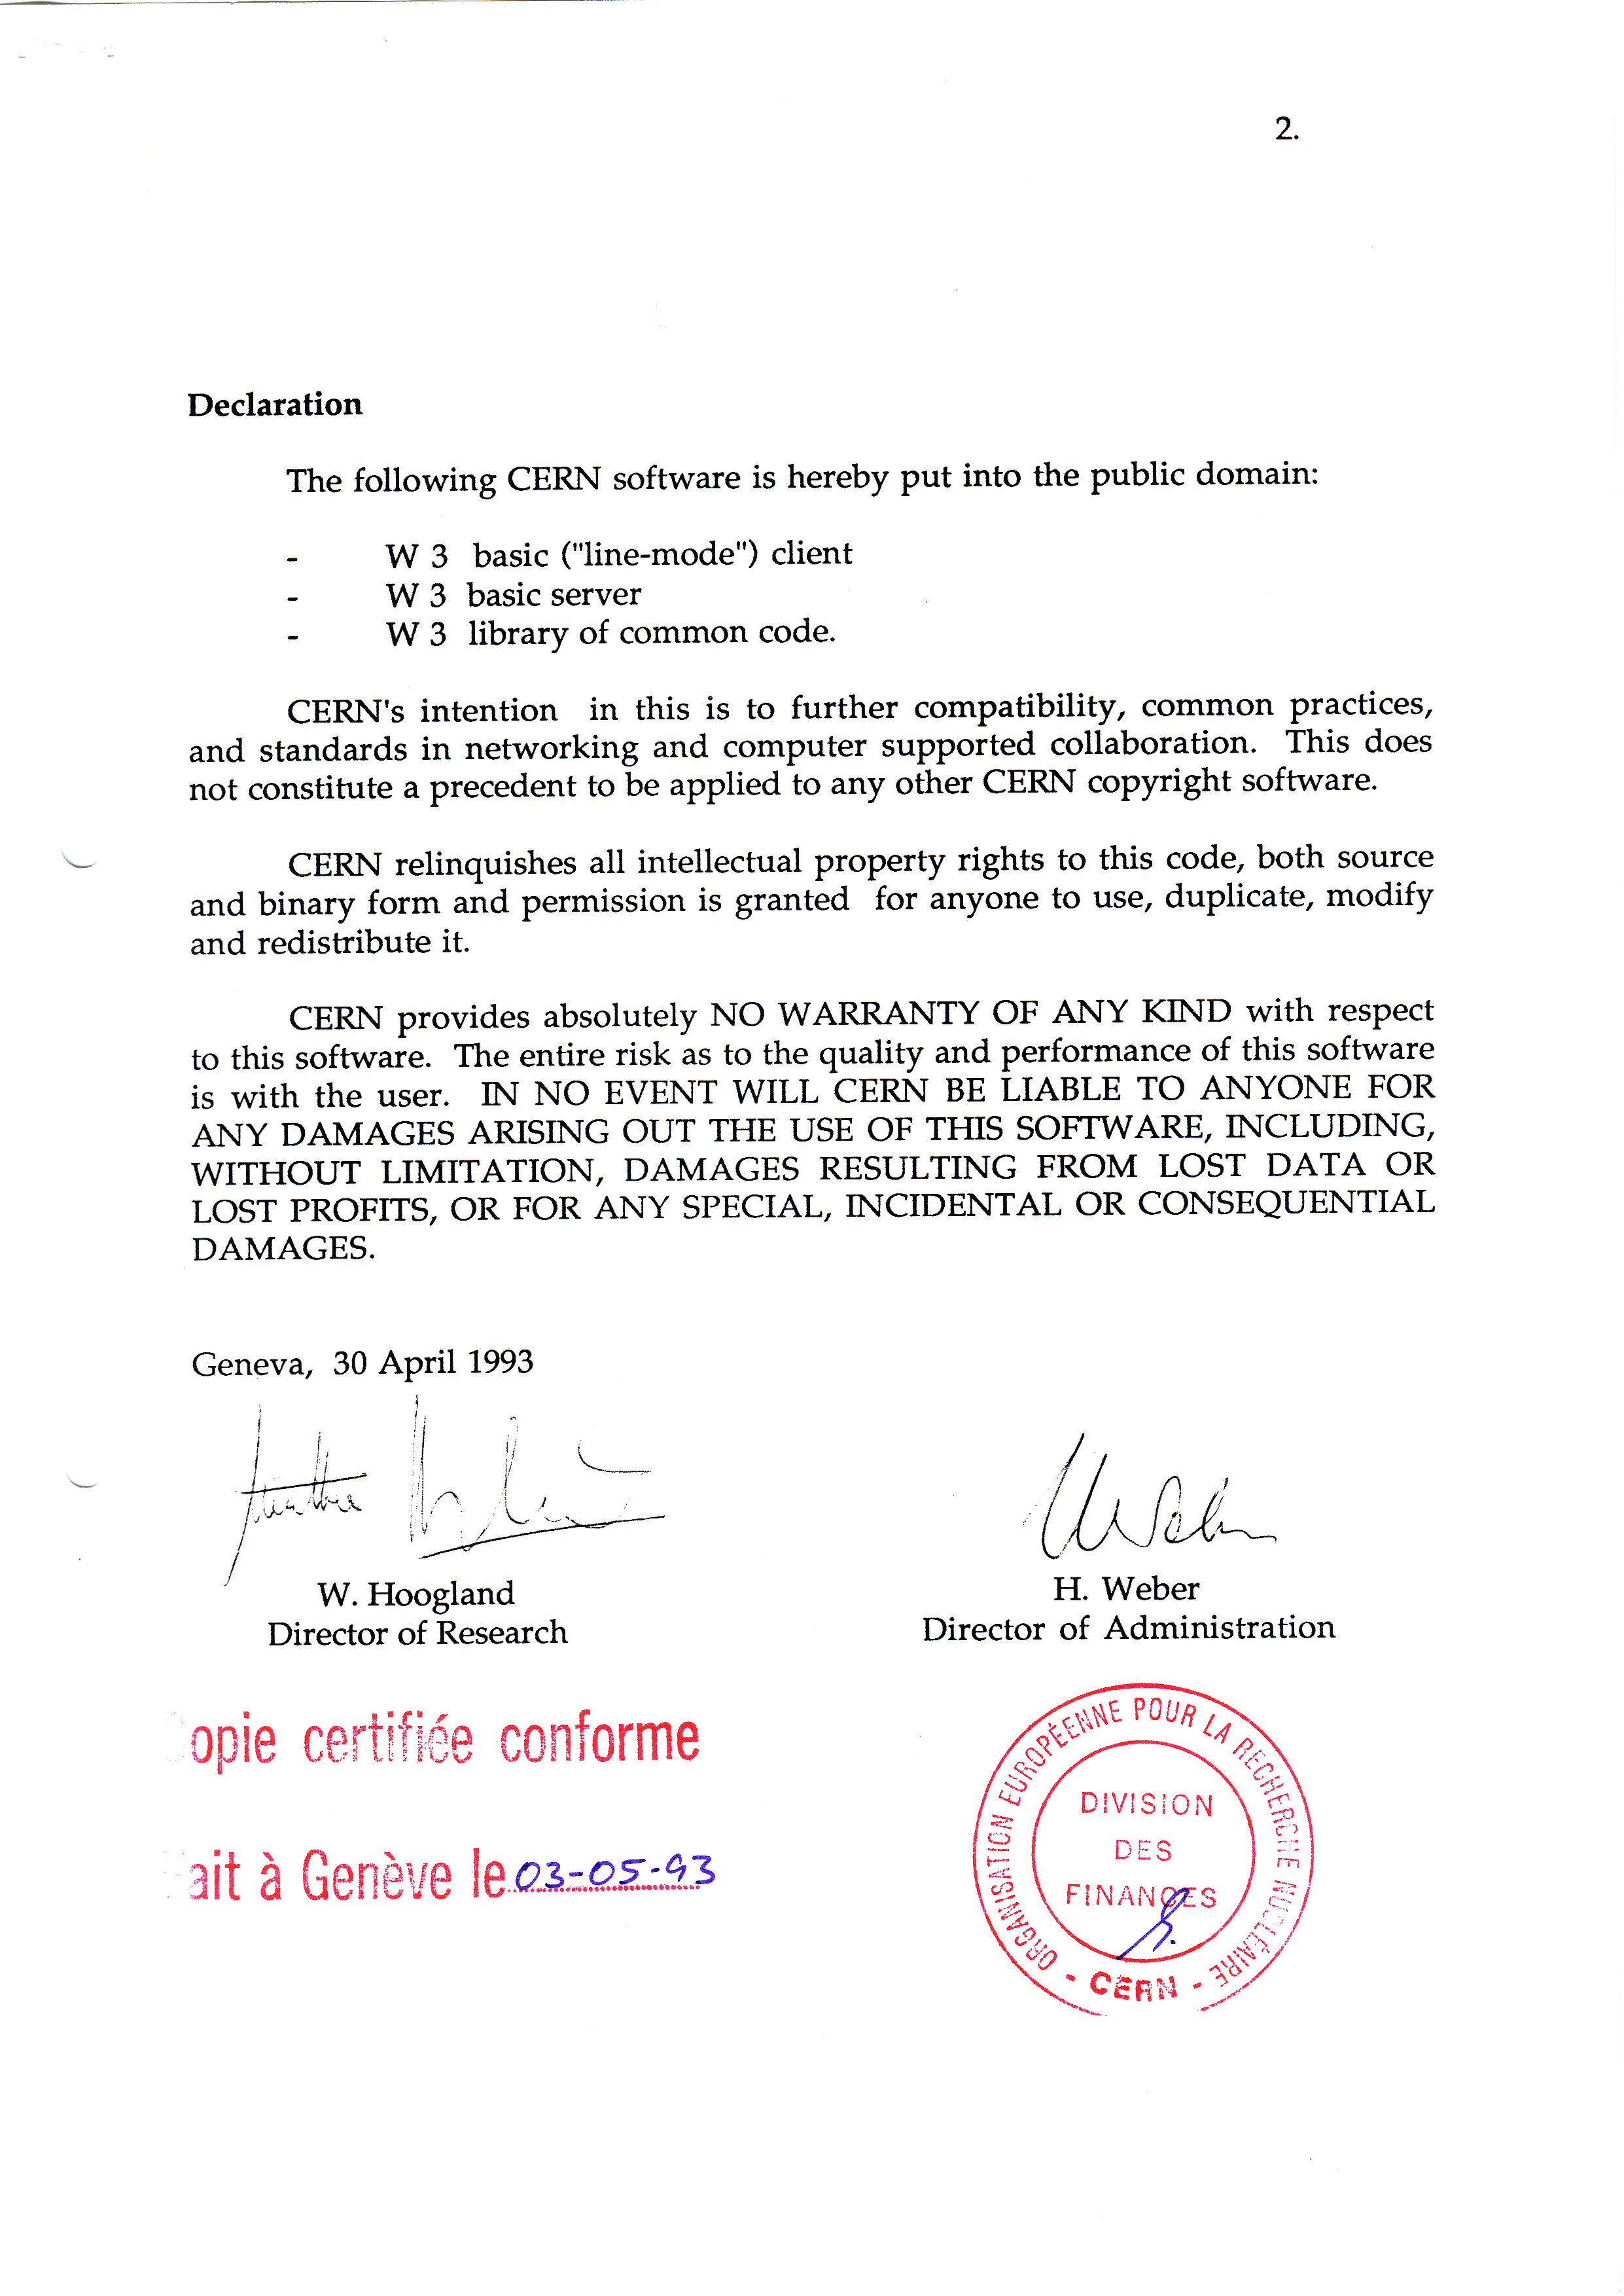 CERN-documentul-atestare-infiintare-internet-30-aprilie-1993-2